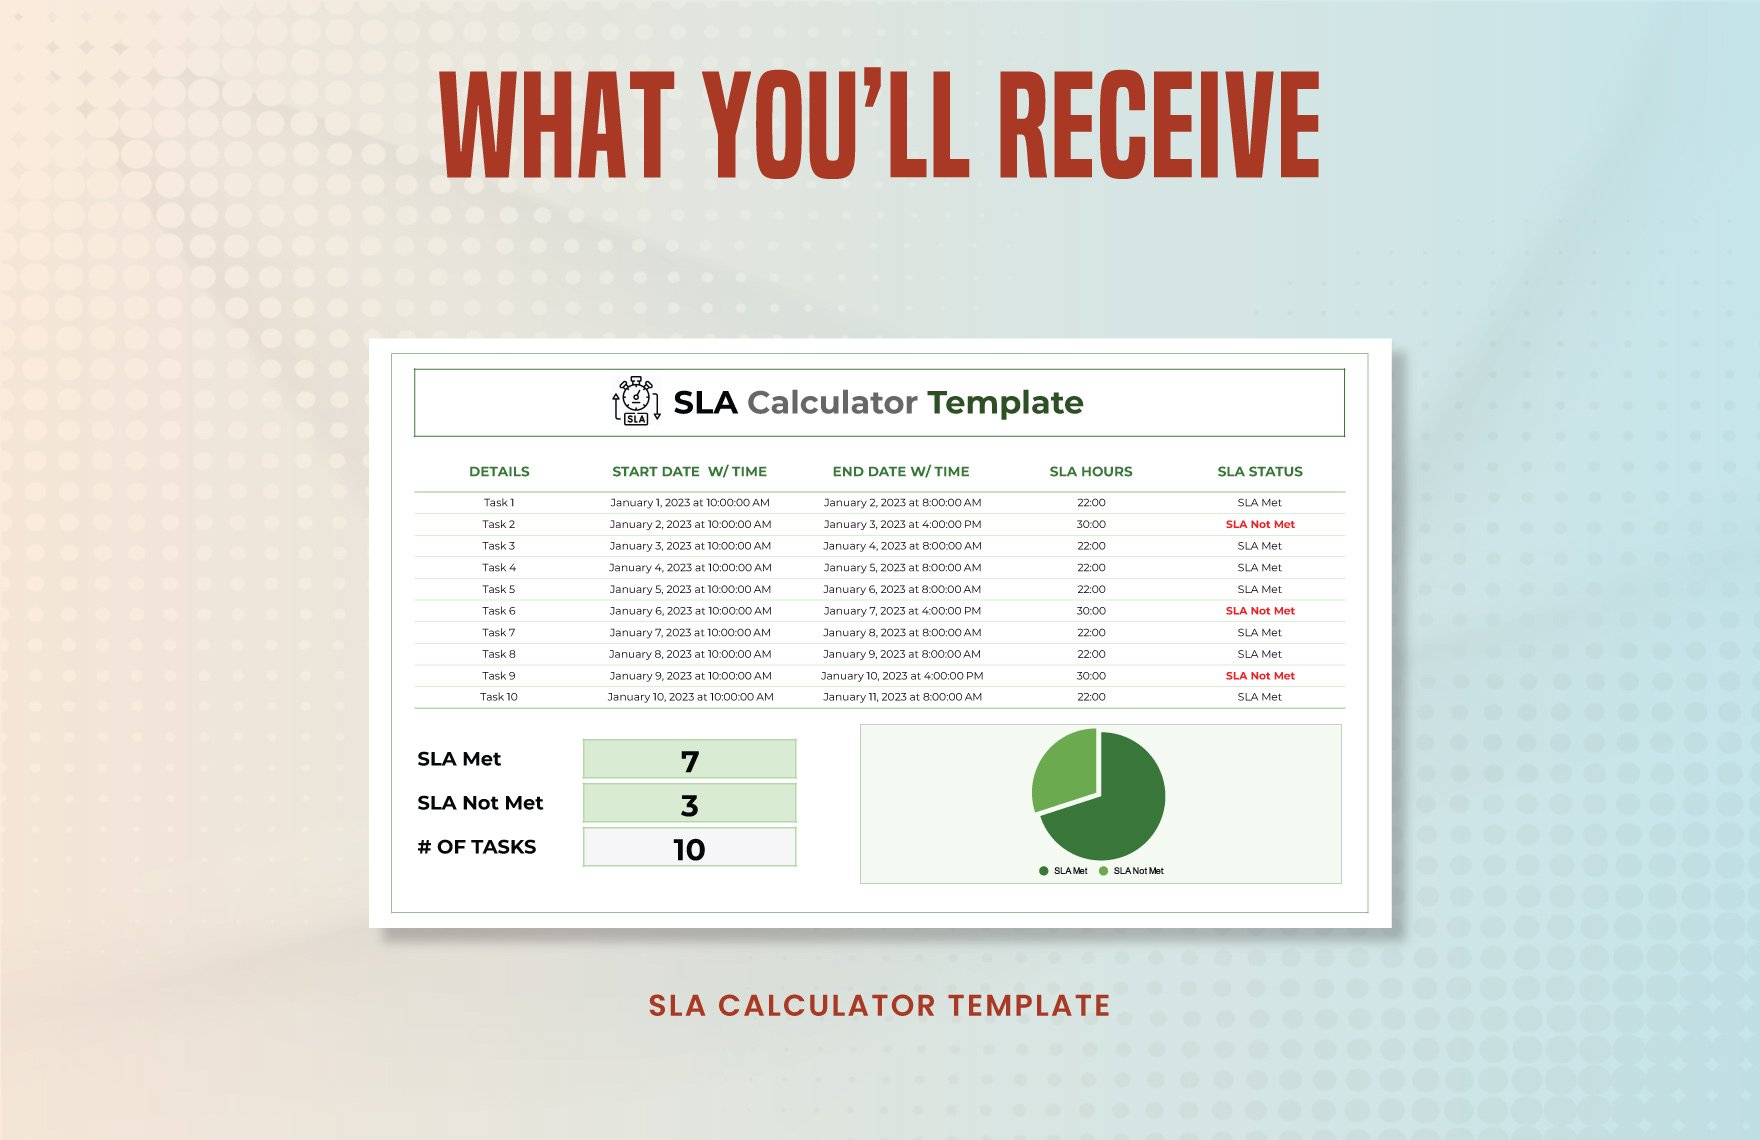 SLA Calculator Template